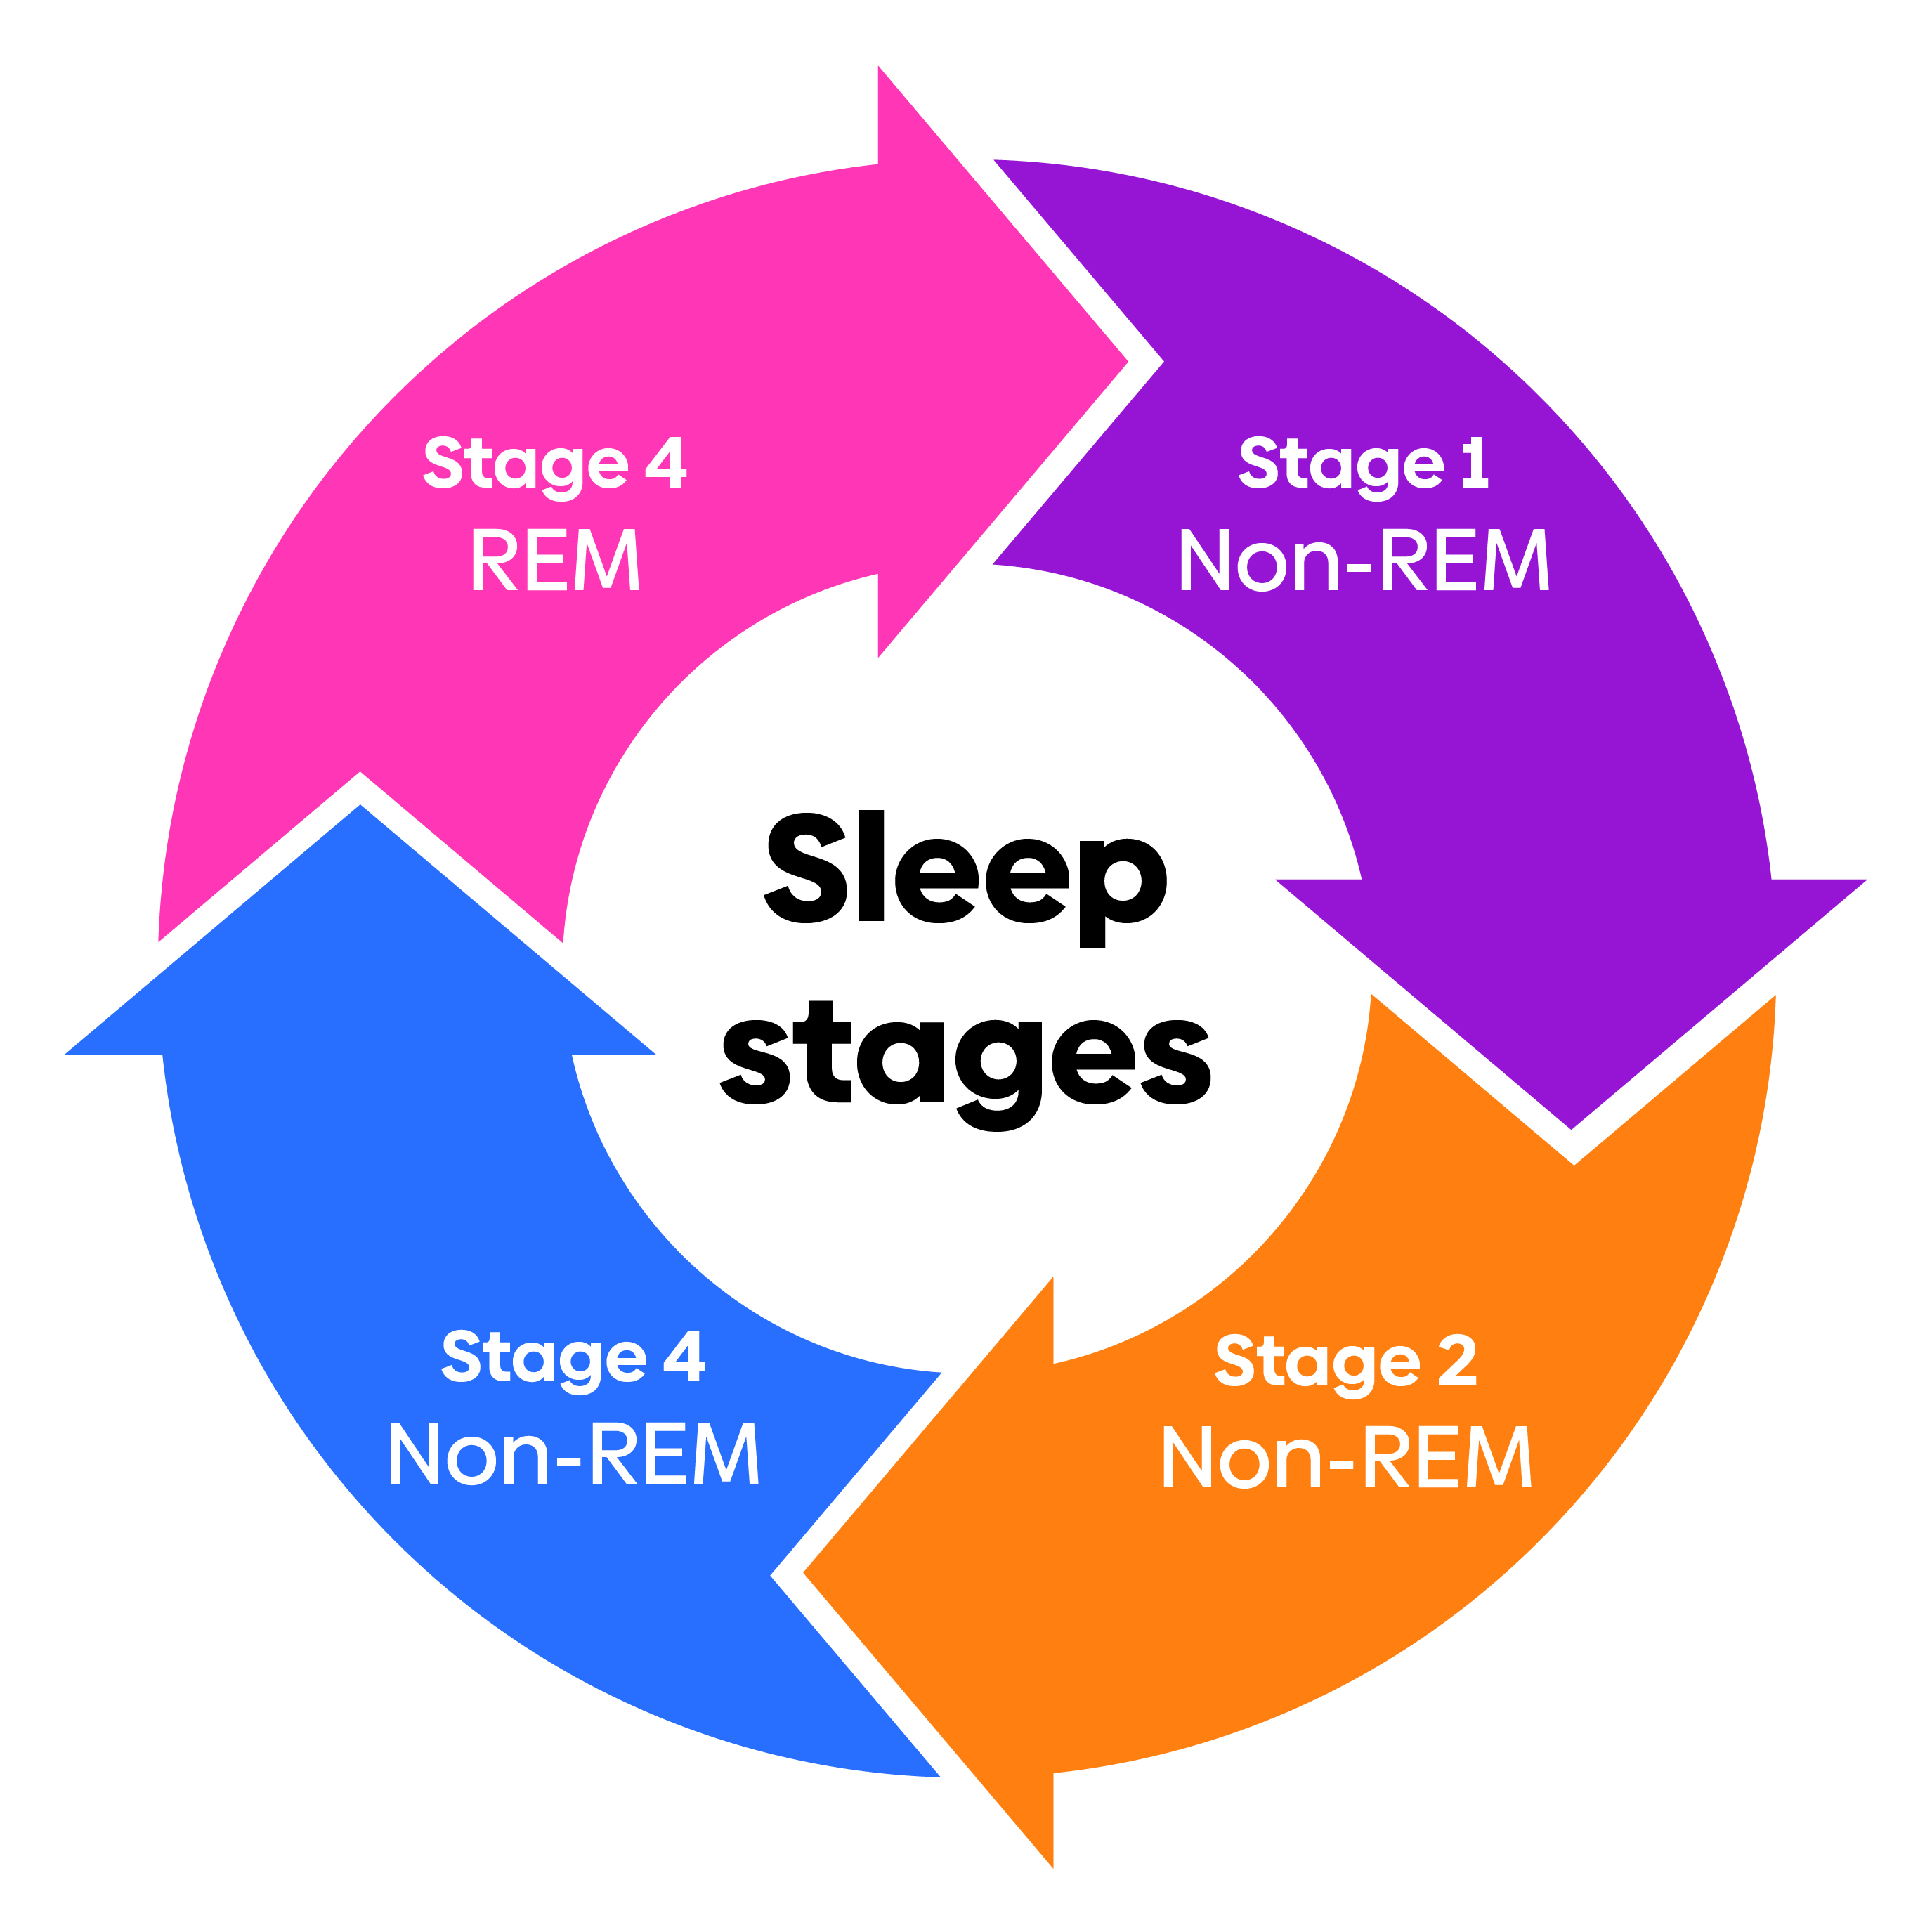 Sleep stages